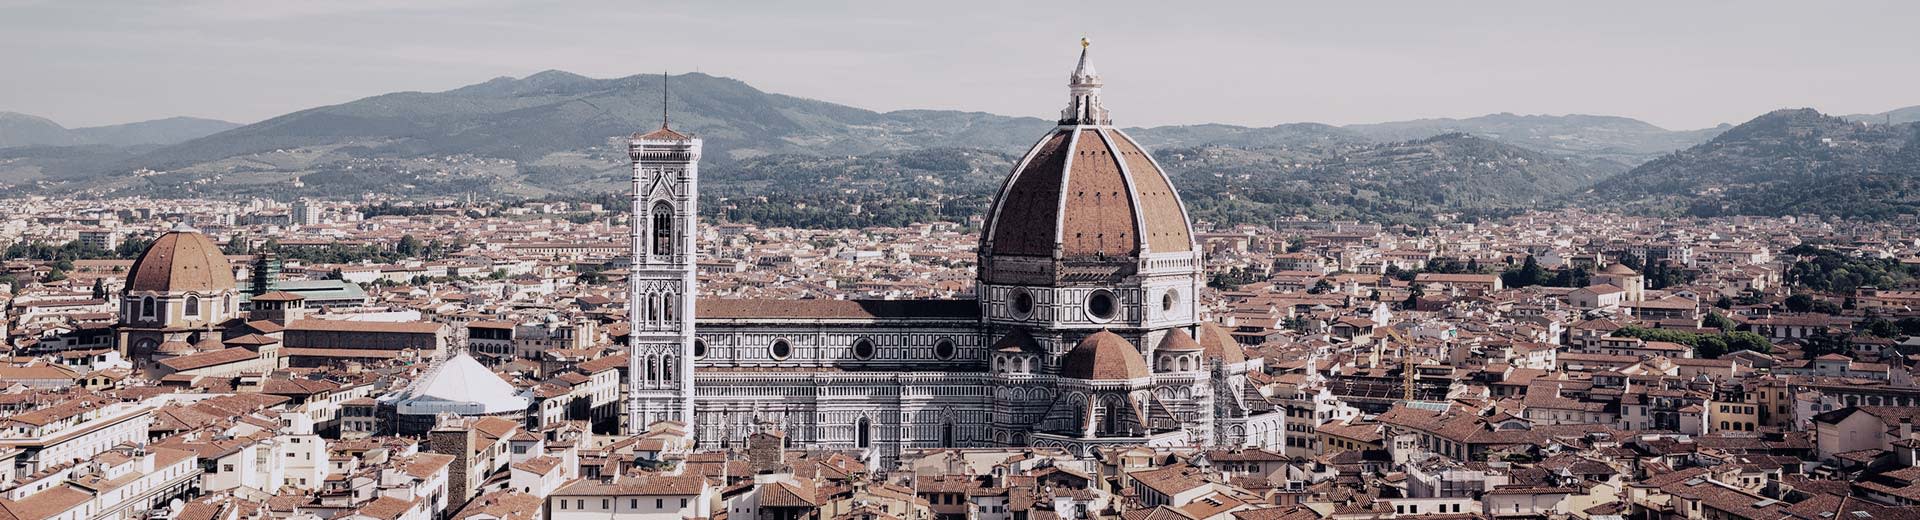 Die schöne Skyline von Florenz an einem klaren und warmen Tag. Die Dominierung der Gegend ist eine große und schöne Kathedrale.